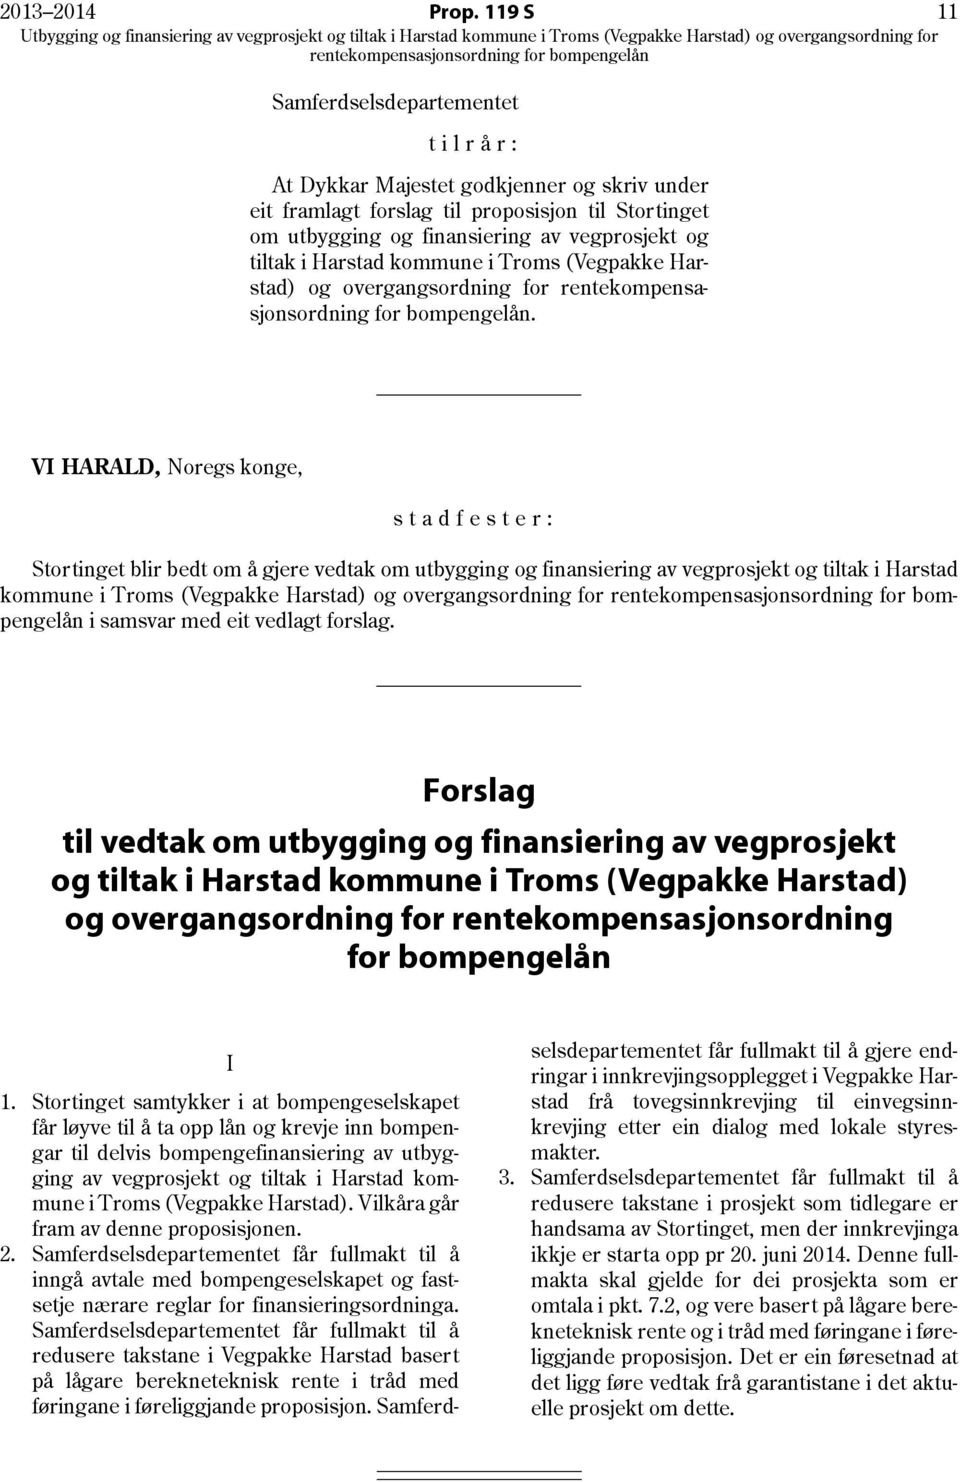 Harstad kommune i Troms (Vegpakke Harstad) og overgangsordning for rentekompensasjonsordning for bompengelån.